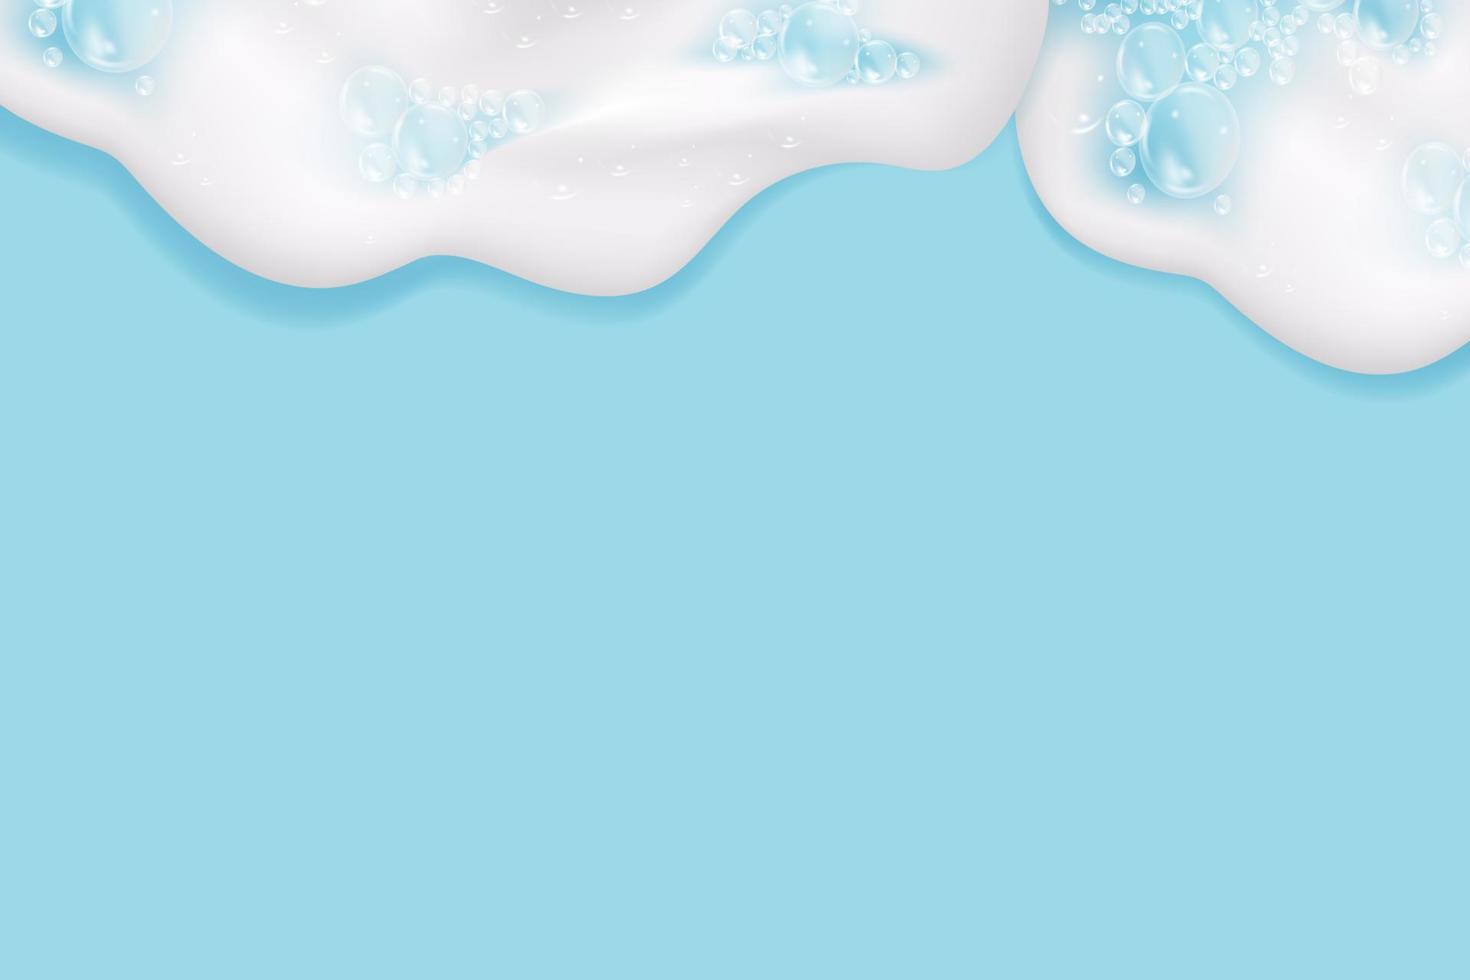 bad blå skum isolerat på en ljus bakgrund. schampo bubblor texture.schampo och bad lödder vektor illustration.